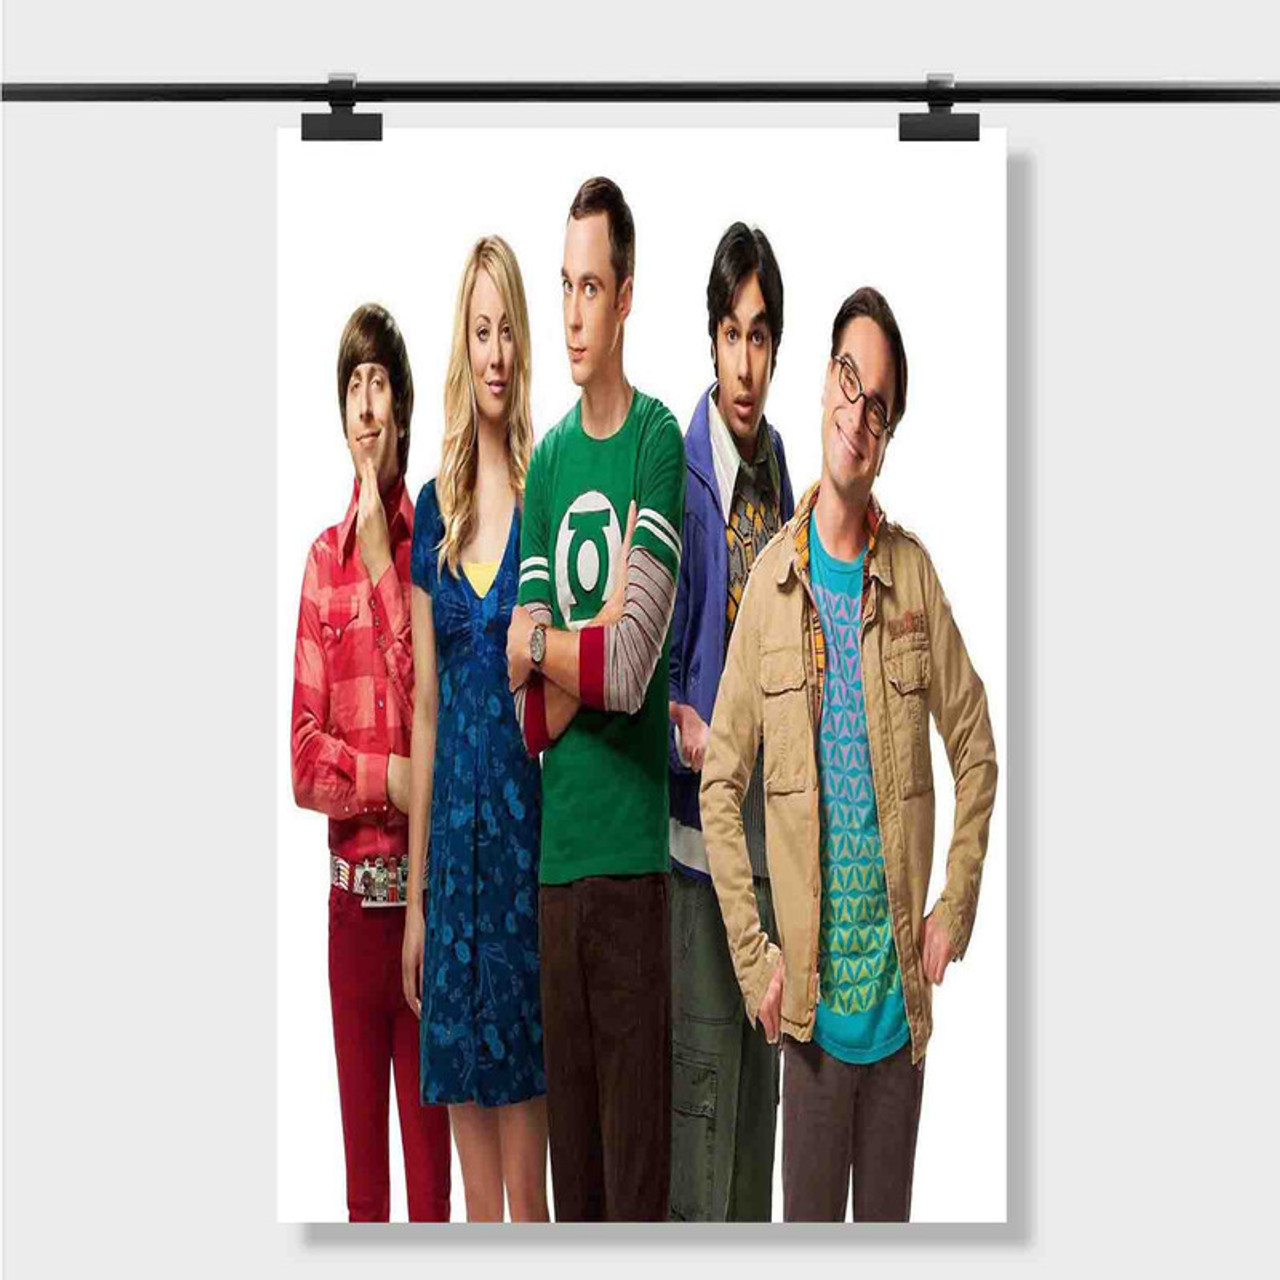 The Big Bang Theory Posters & Wall Art Prints